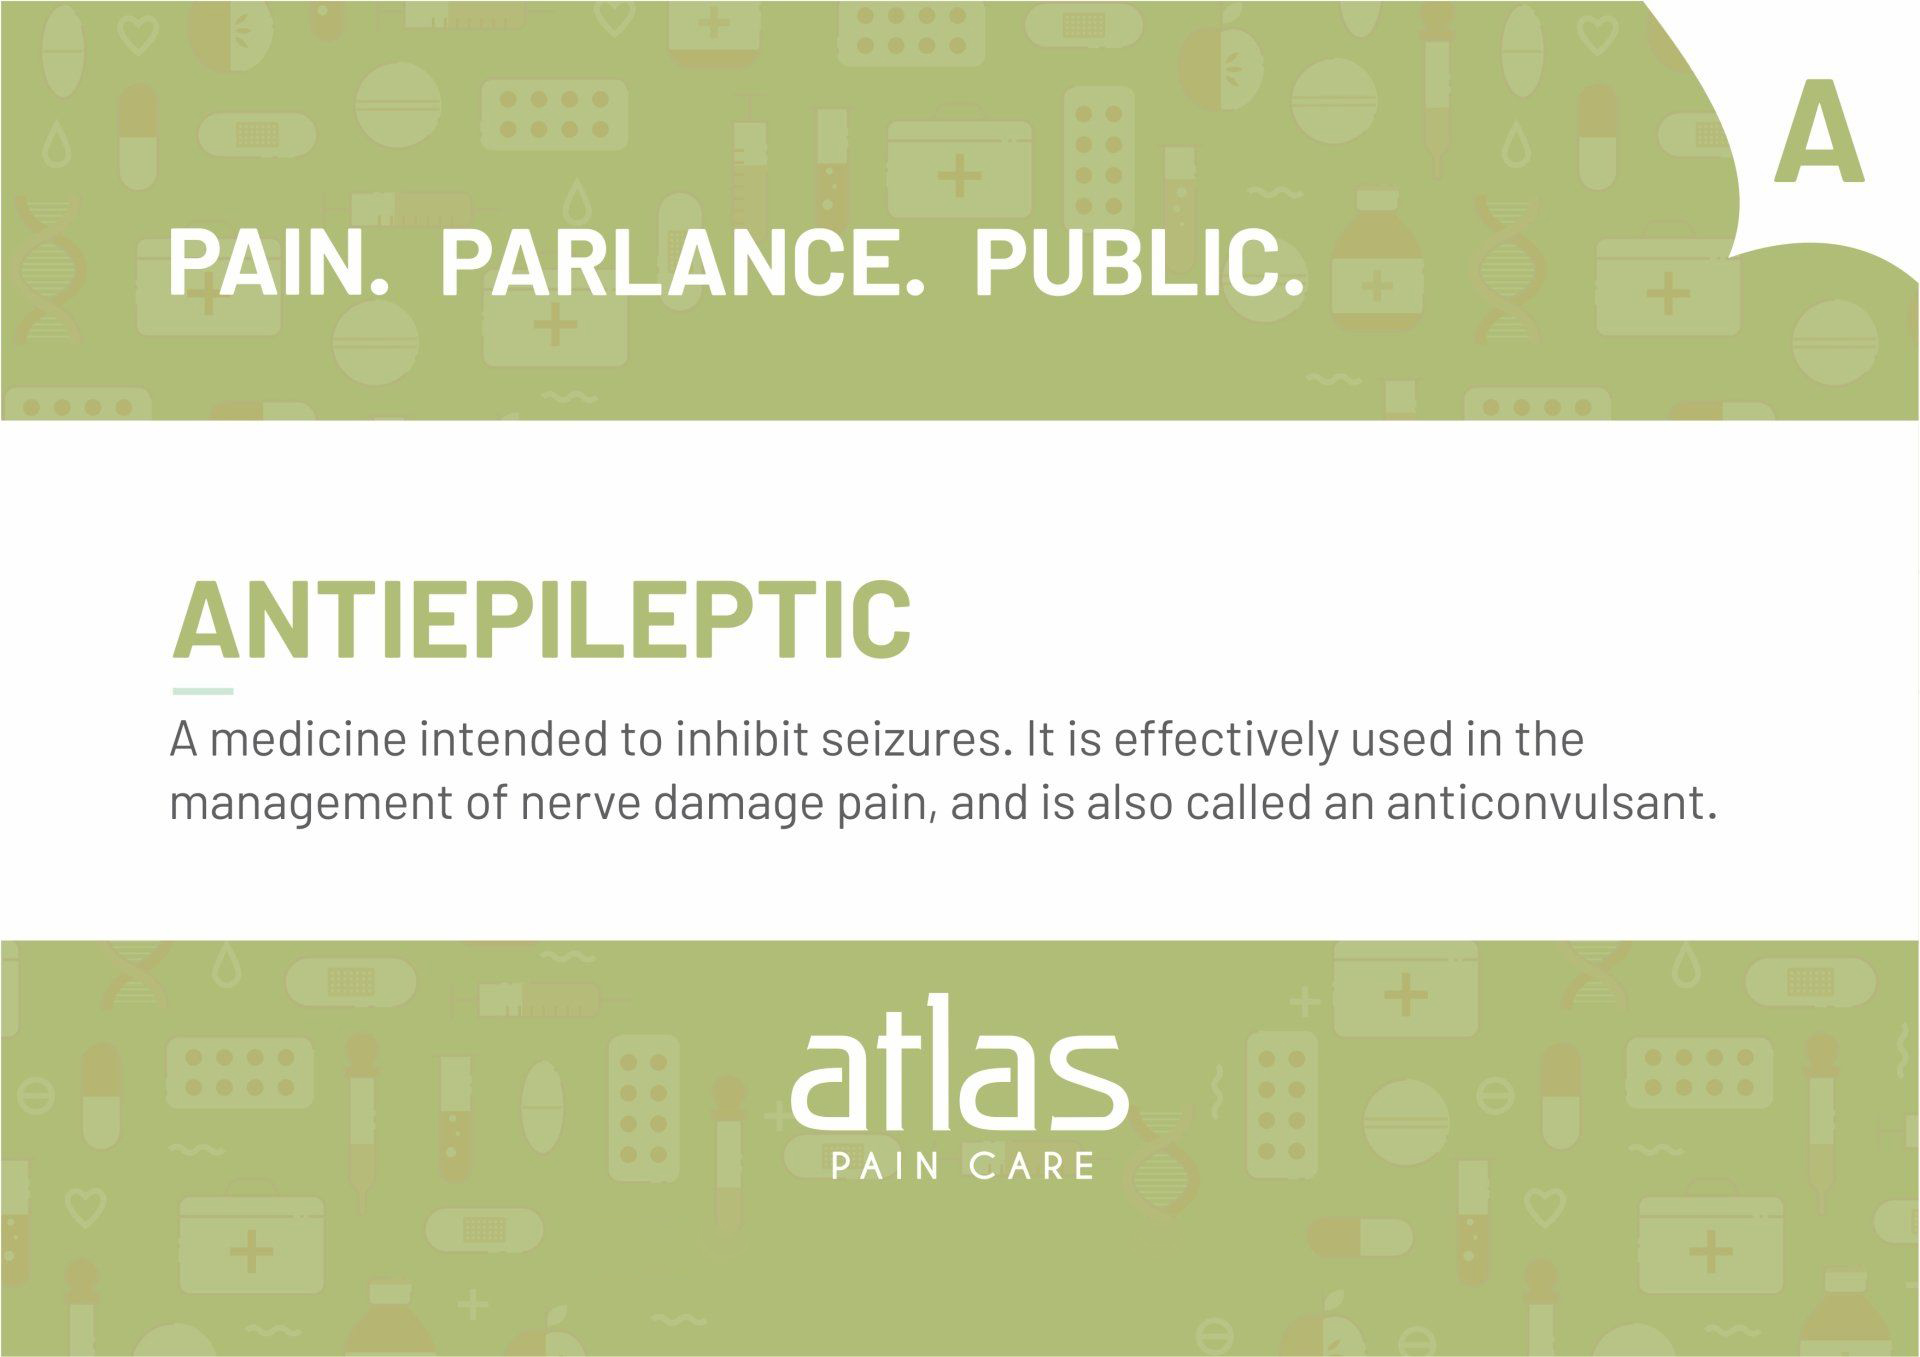 Pain Glossary image - Atlas